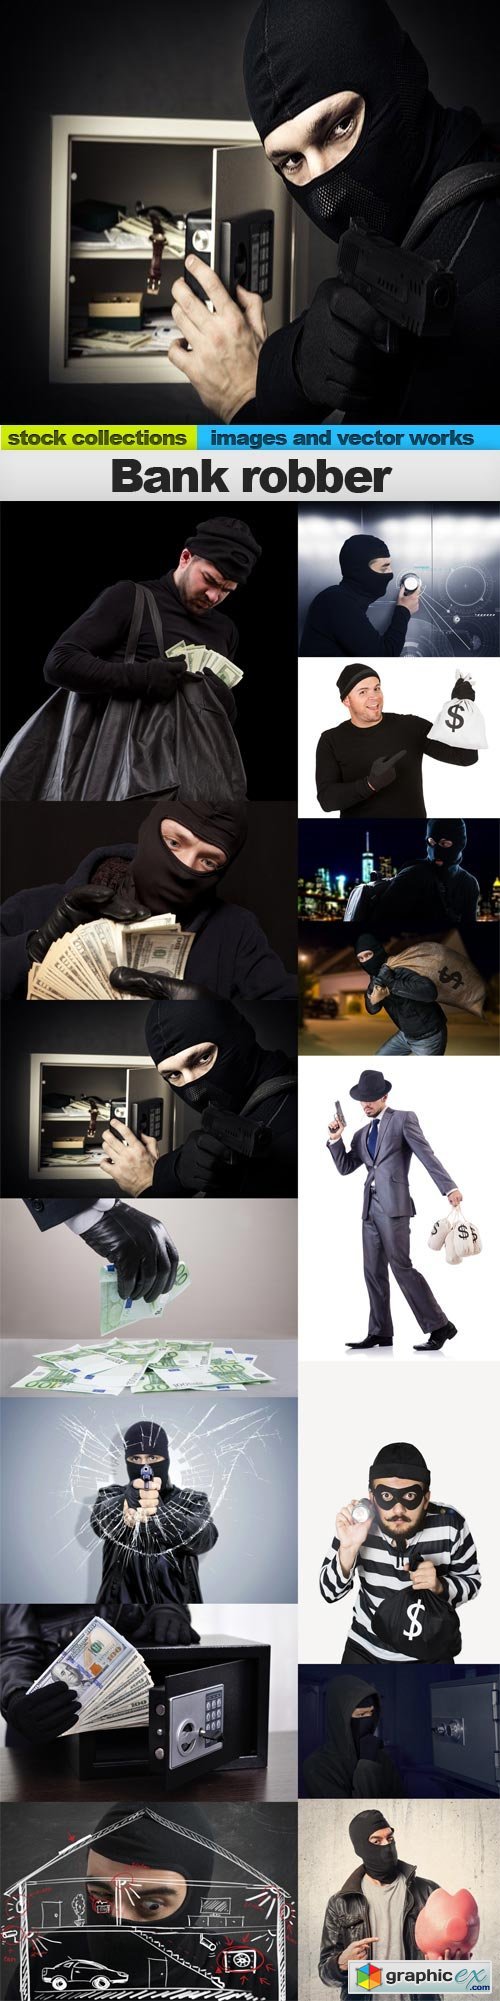 Bank robber, 15 x UHQ JPEG